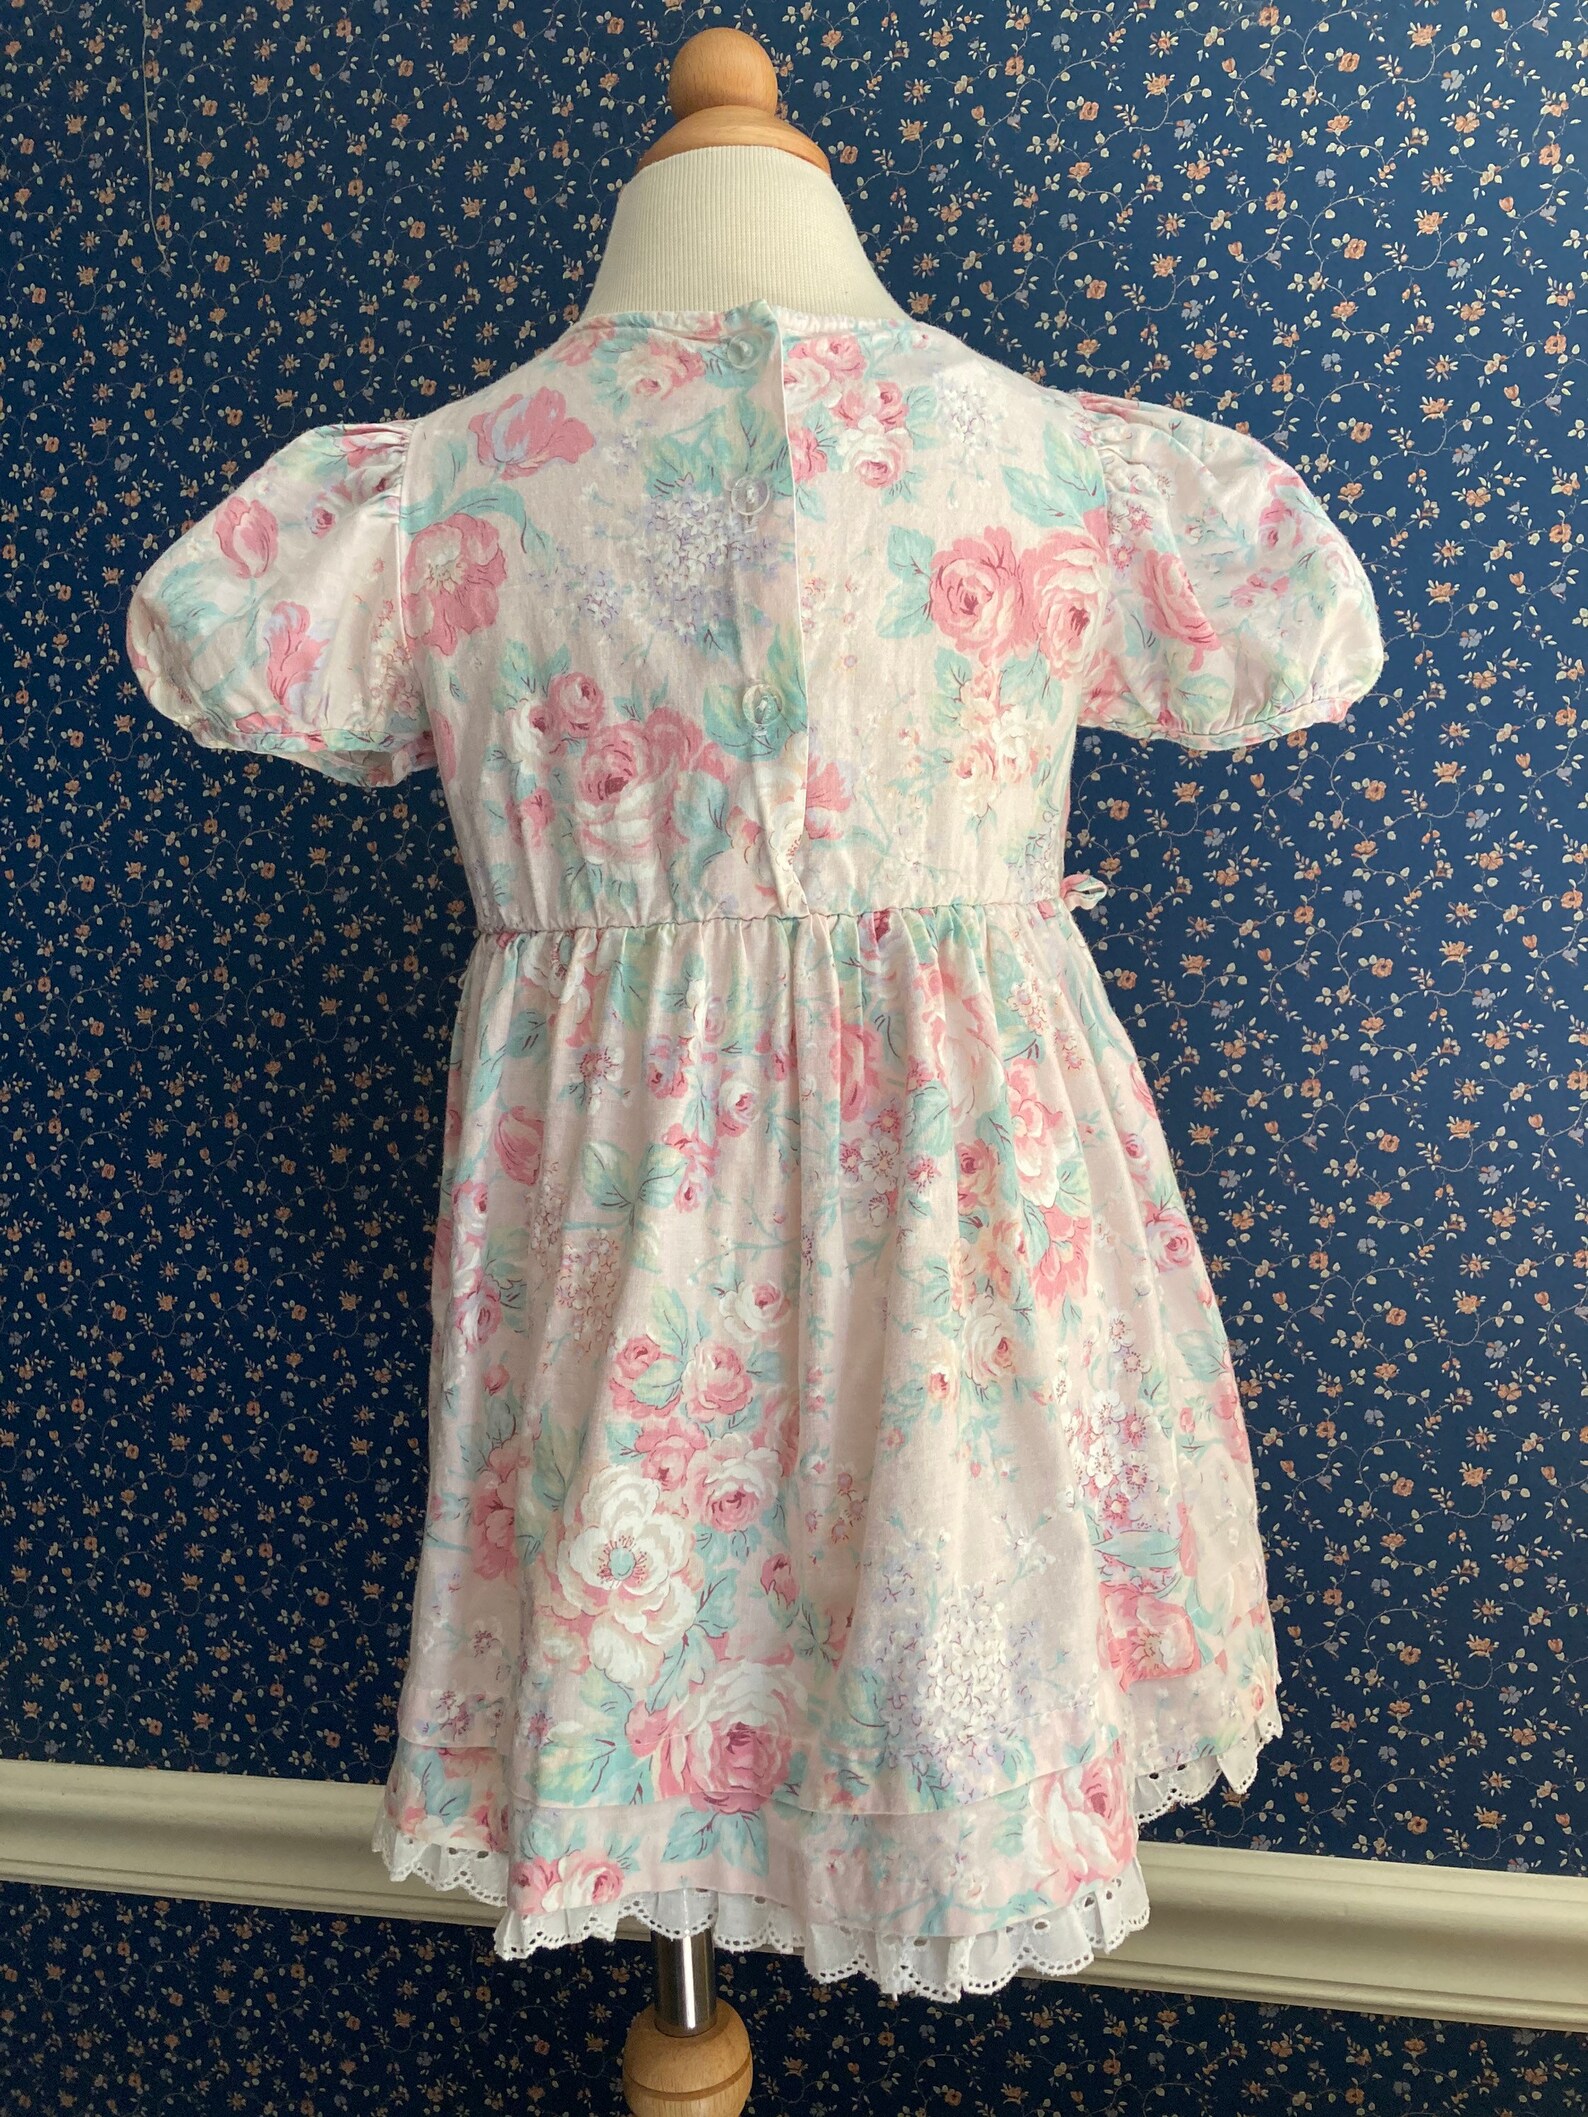 Vintage Floral Jane Darling Dress 3/4t | Etsy